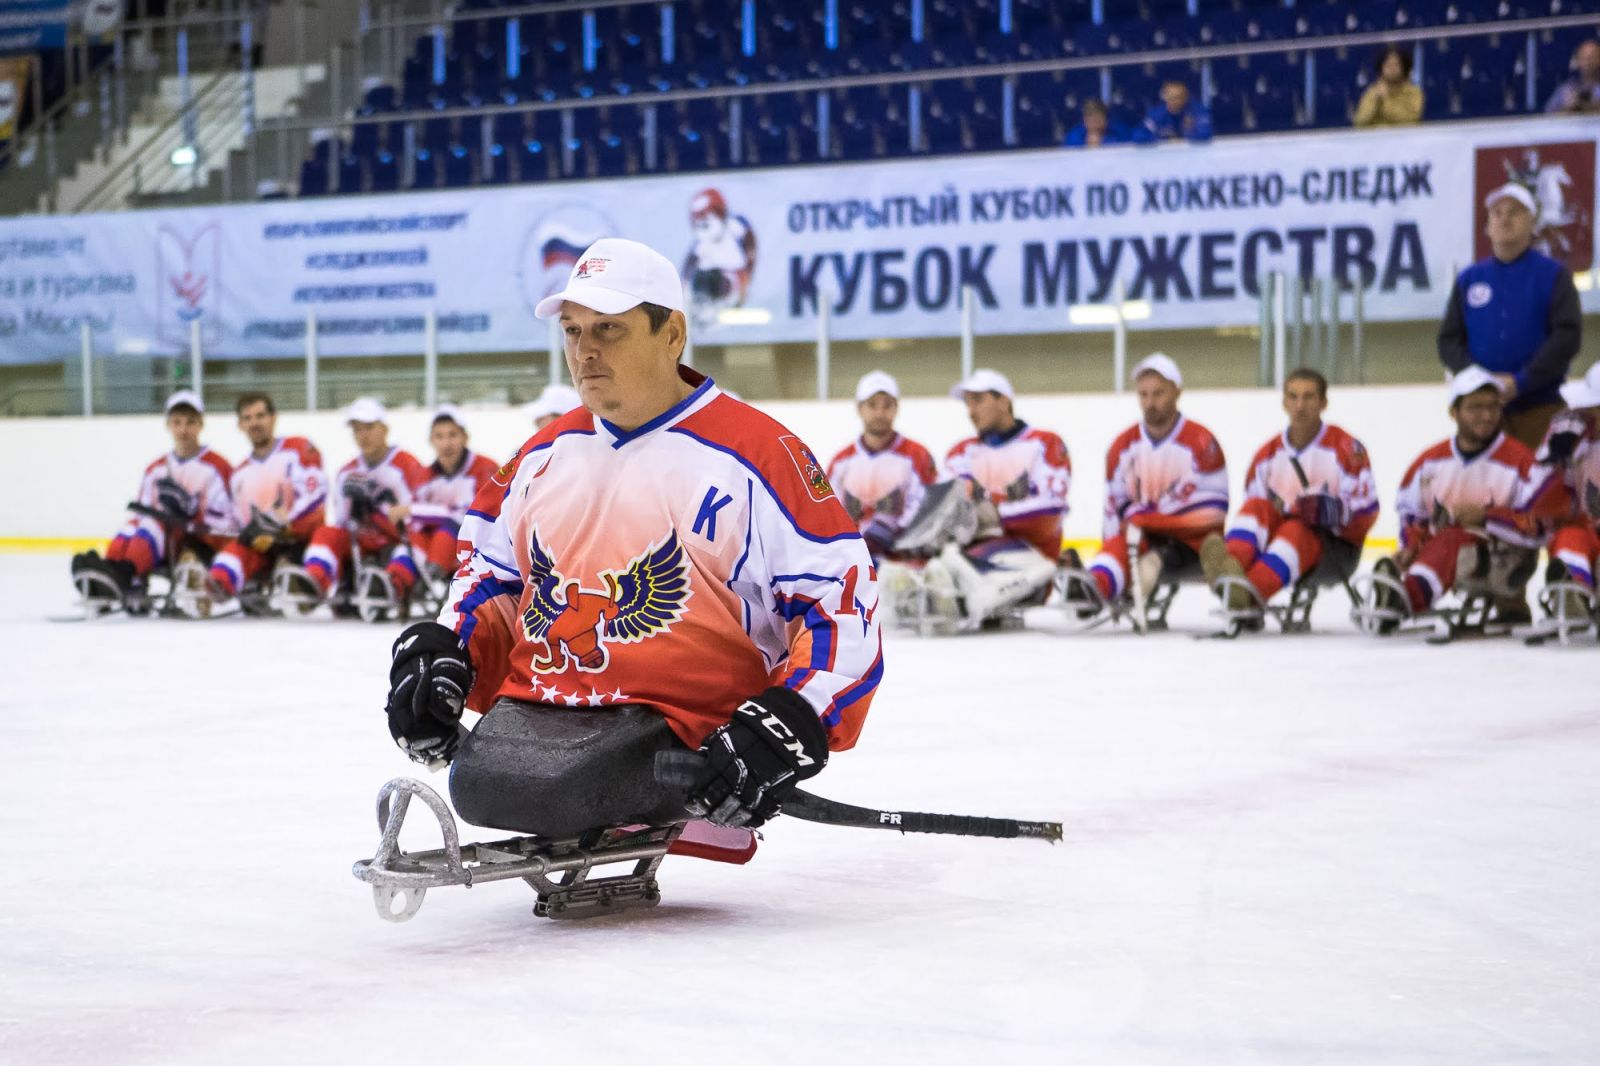 Серебряный призер Паралимпийских игр по следж-хоккею В. Селюкин: «Самое главное здесь — это победа над собой!»